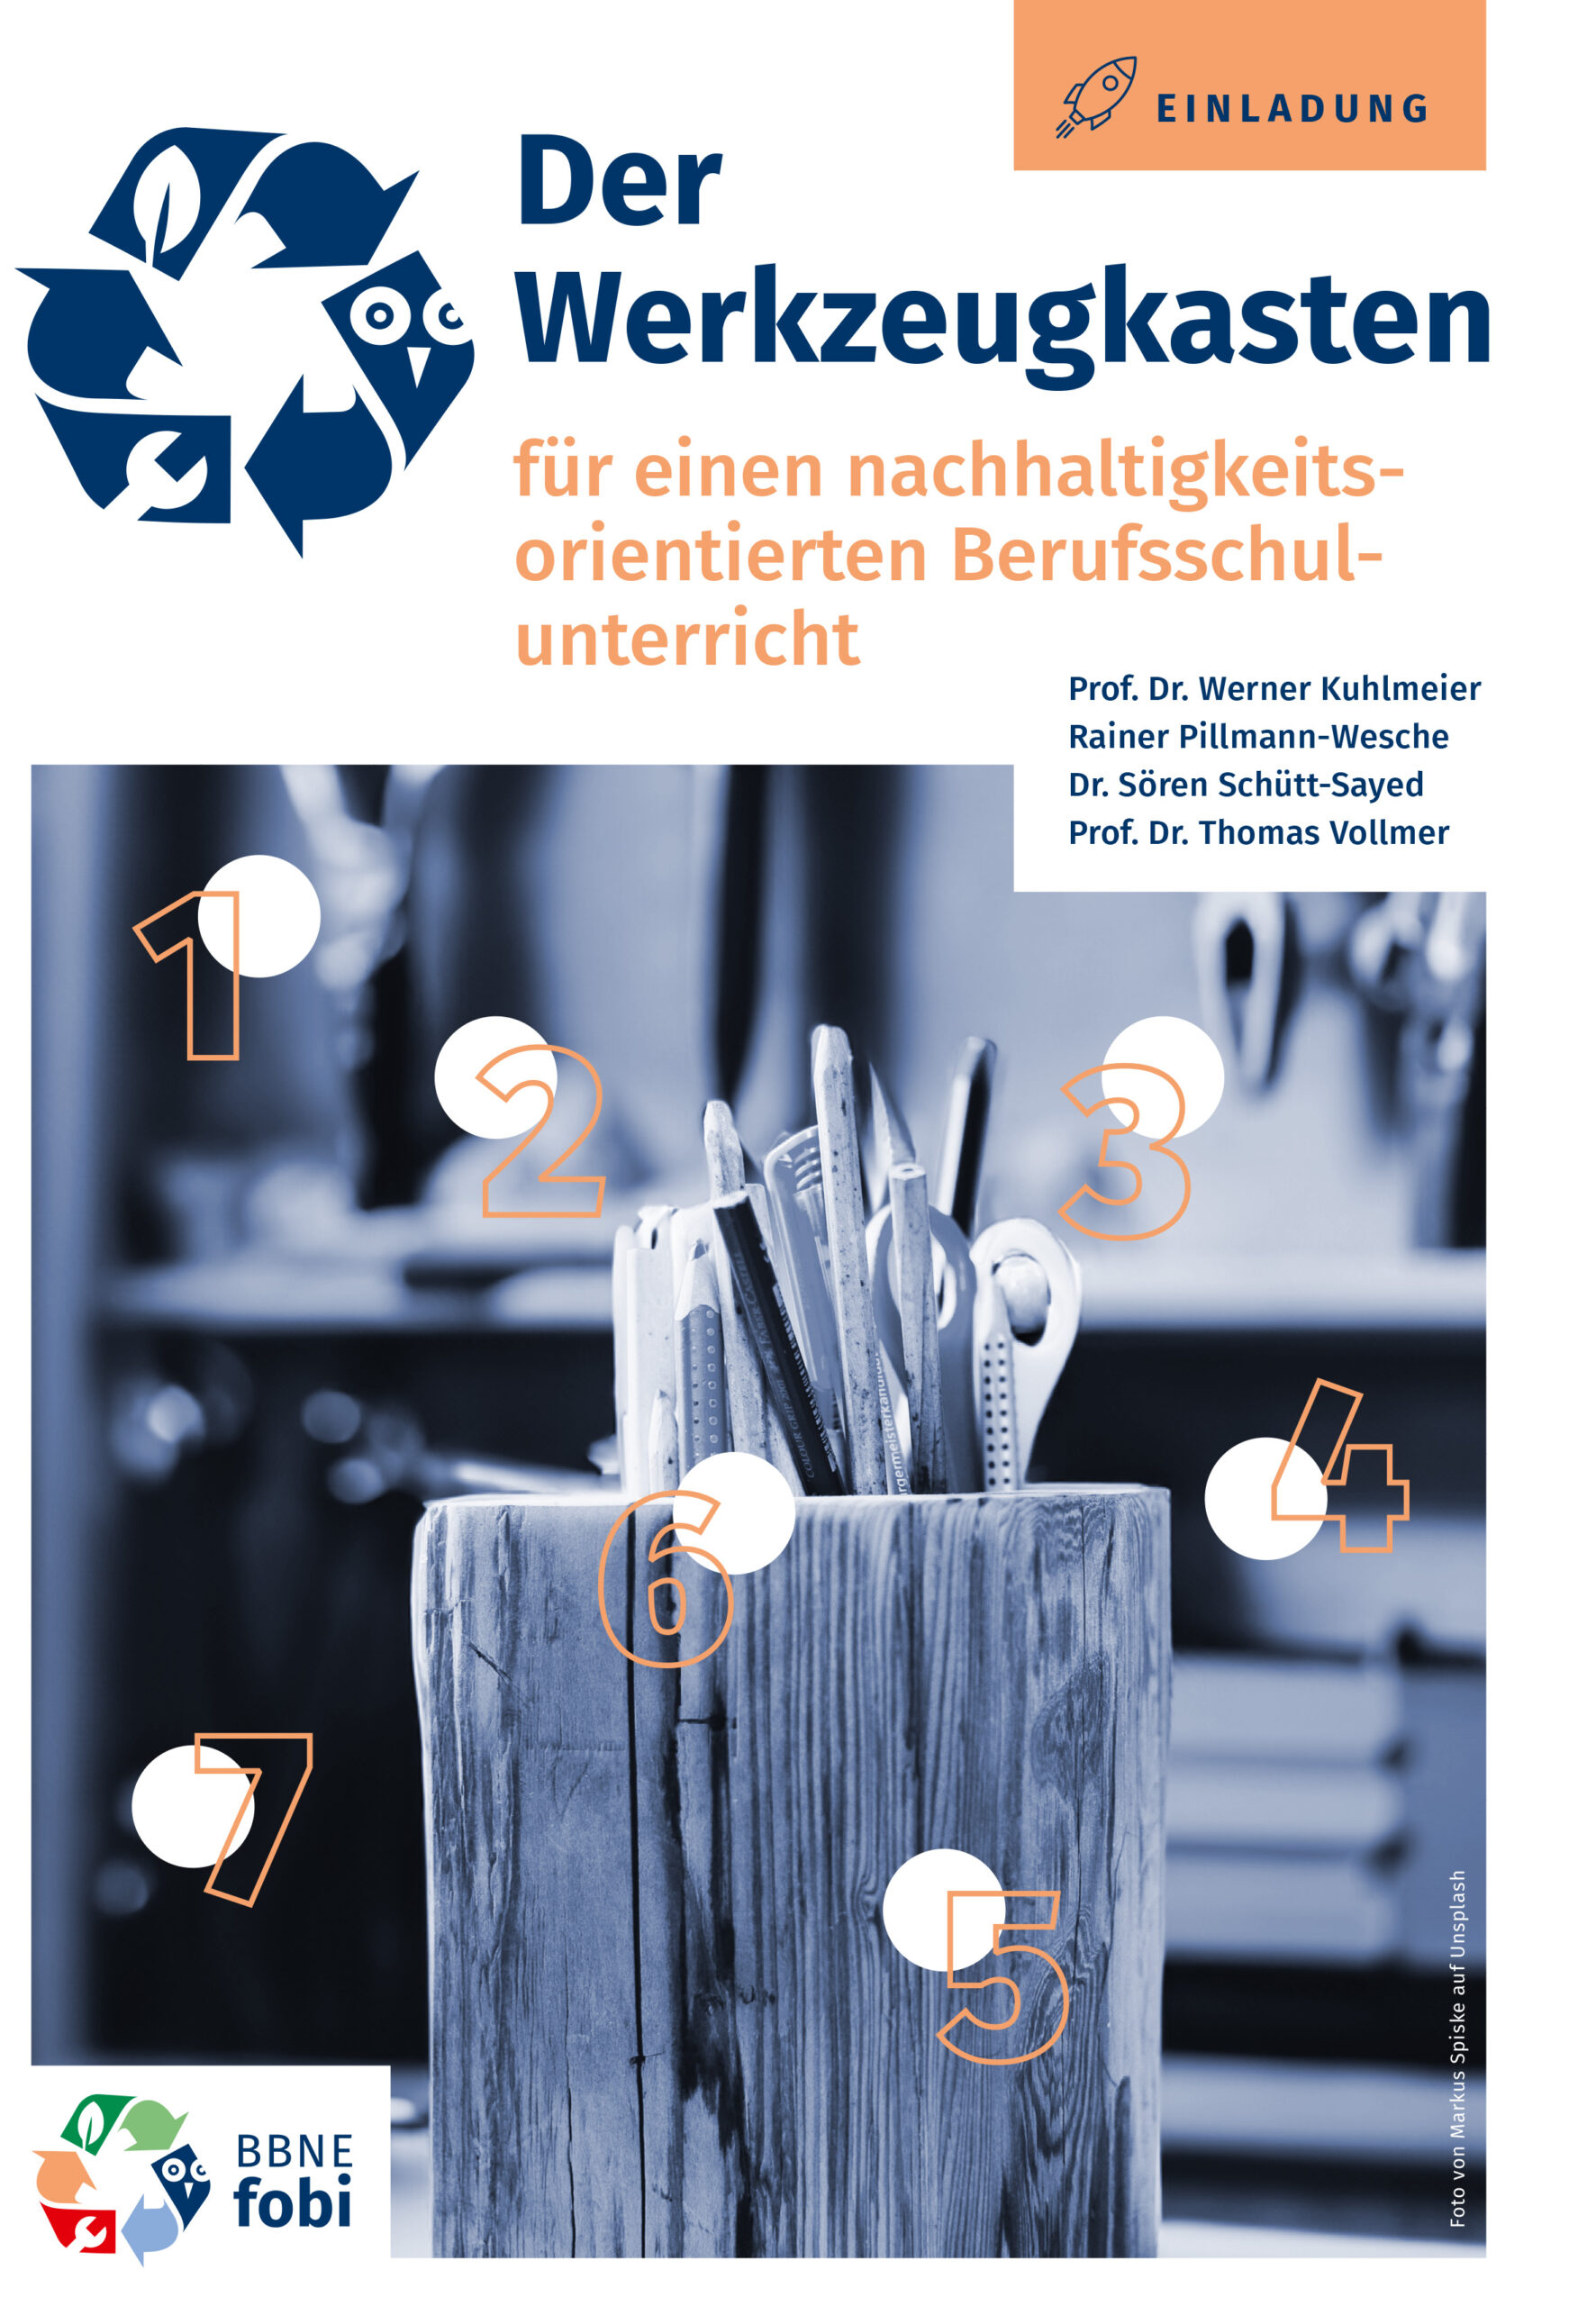 Das Foto zeigt die Titelseite der Broschüre. Rechts oben steht in einem orangenfarbigen Kasten "Einladung", daneben ganz einfach gezeichnet ein Raumschiff. Im oberen Drittel ist auf weißen Grund links ein Symbol, das aus 3 Pfeilen besteht, die kreisförmig zueinander zeigen. Daneben steht als Text "Der Werkzeugkasten für einen nachhaltigkeitsorientierten Berufsschulunterricht". Darunter stehen 4 Namen: Prof. Dr. Werner Kuhlmeier, Rainer Pillmann-Wesche, Dr. Sören Schütt-Sayed und Prof. Dr. Thomas Vollmer. Die unteren 2/3 des Fotos nimmt ein in blauben Farben gehaltenes Foto ein, das hauptsächlich Bleistifte in einem Behälter zeigt, der wie ein Baumstamm aussieht. Auf dem Bild gibt es ferner 7 weiße Punkte, an denen jeweils in orangener Farbe eine Ziffer von 1 bis 7 steht. Unten links ist noch ein Logo und die Bezeichnung "BBNE fobi".